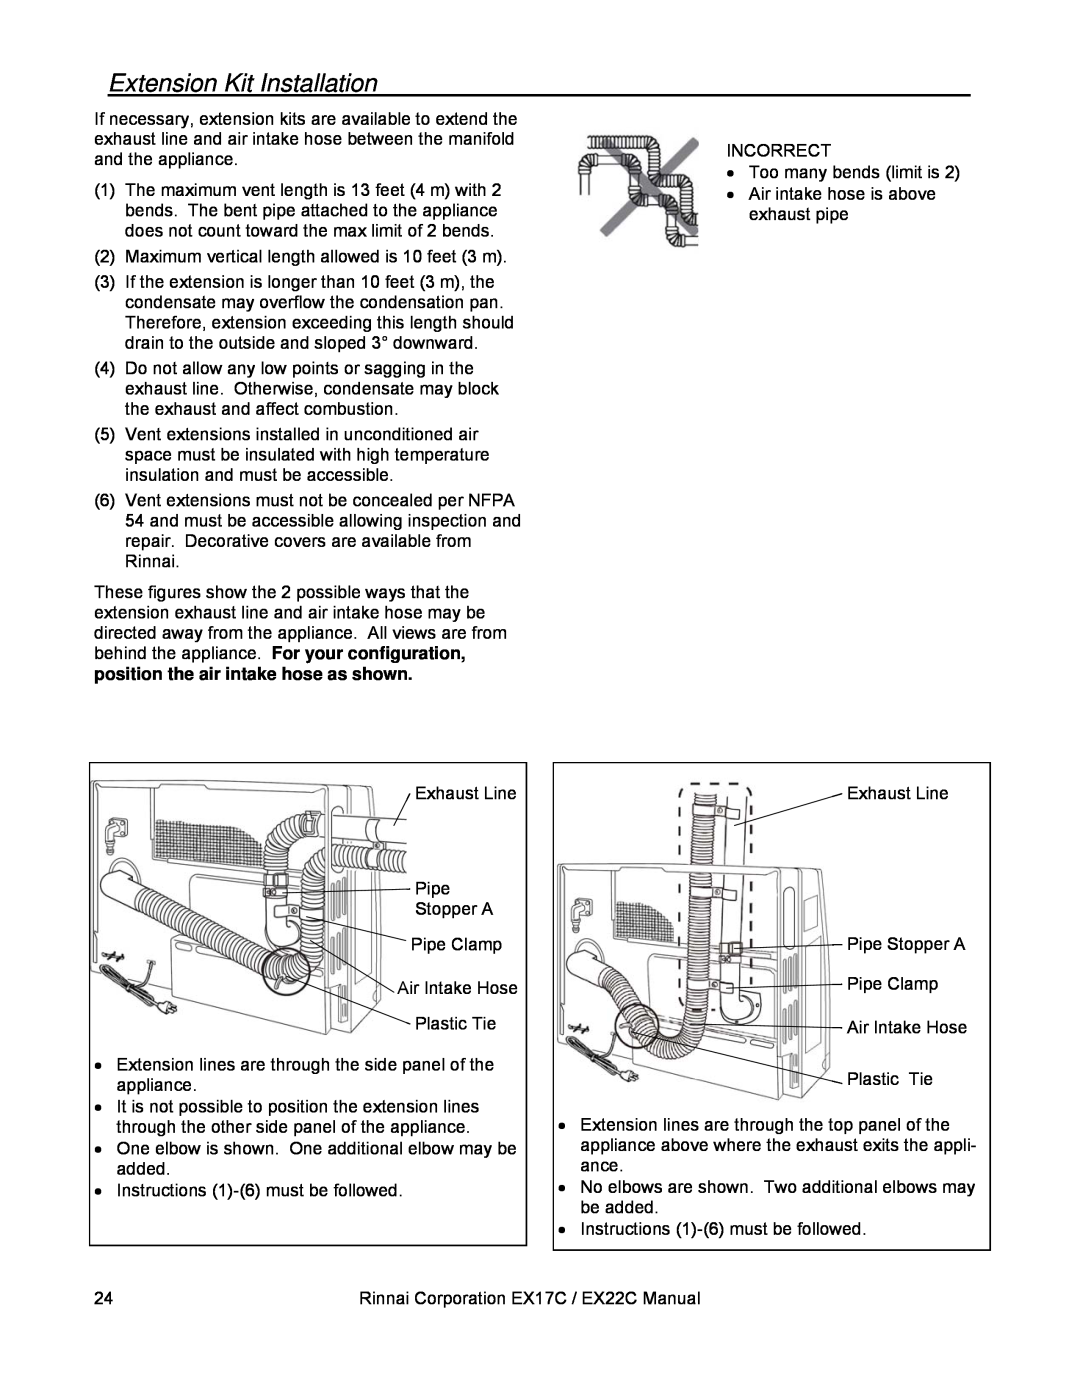 Rinnai EX22C (RHFE-559FTA), EX17C (RHFE-434FTA) installation manual Extension Kit Installation 